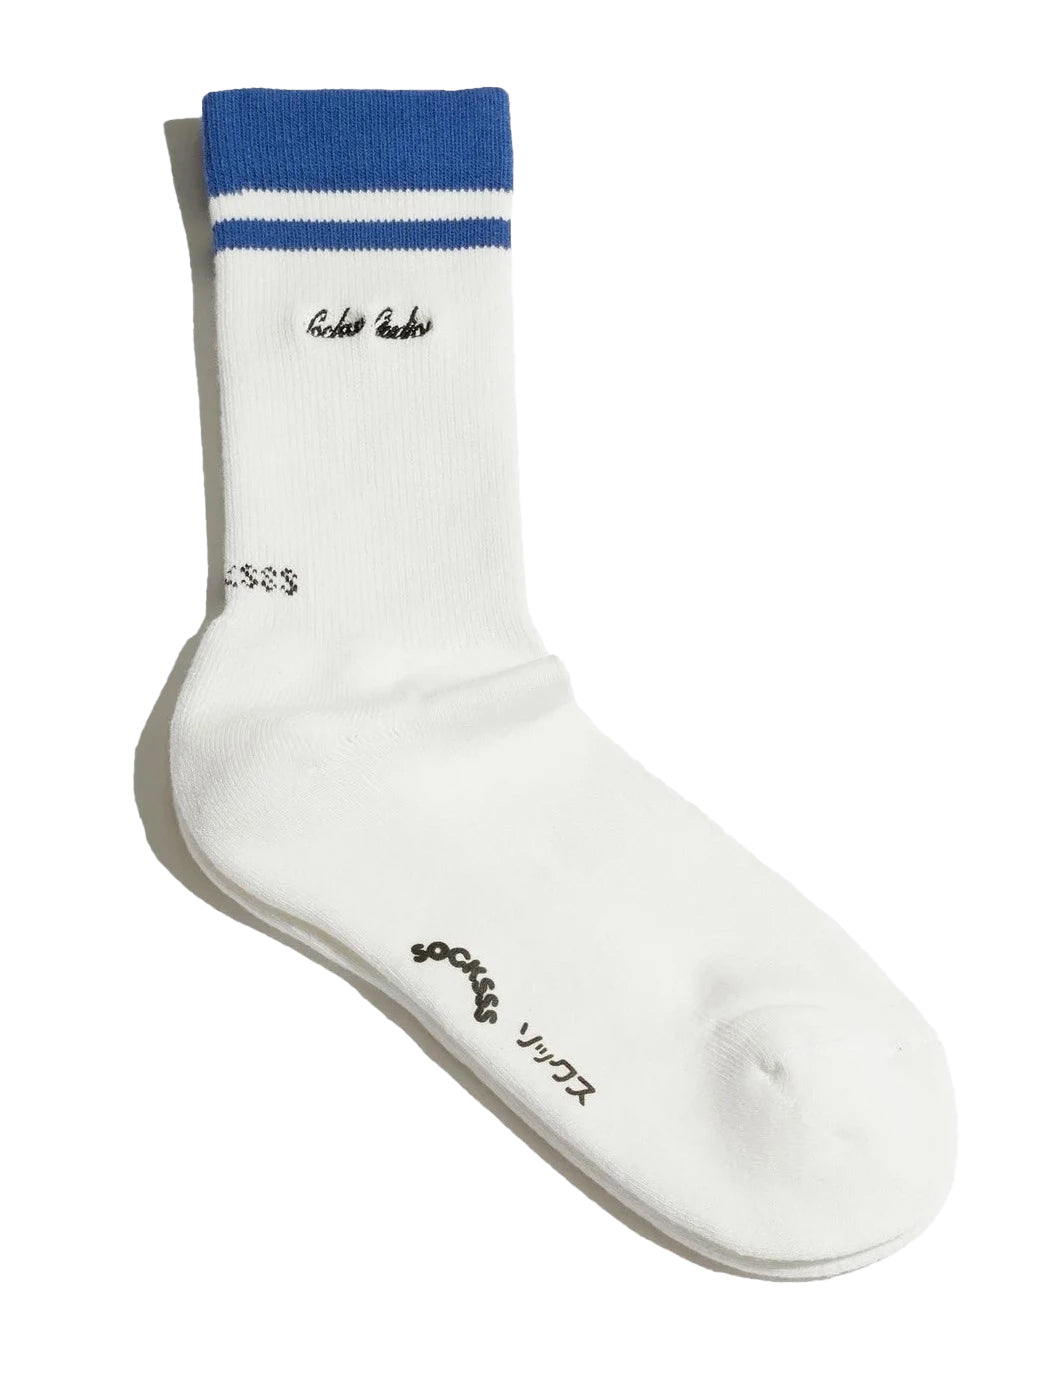 Rockefeller socks